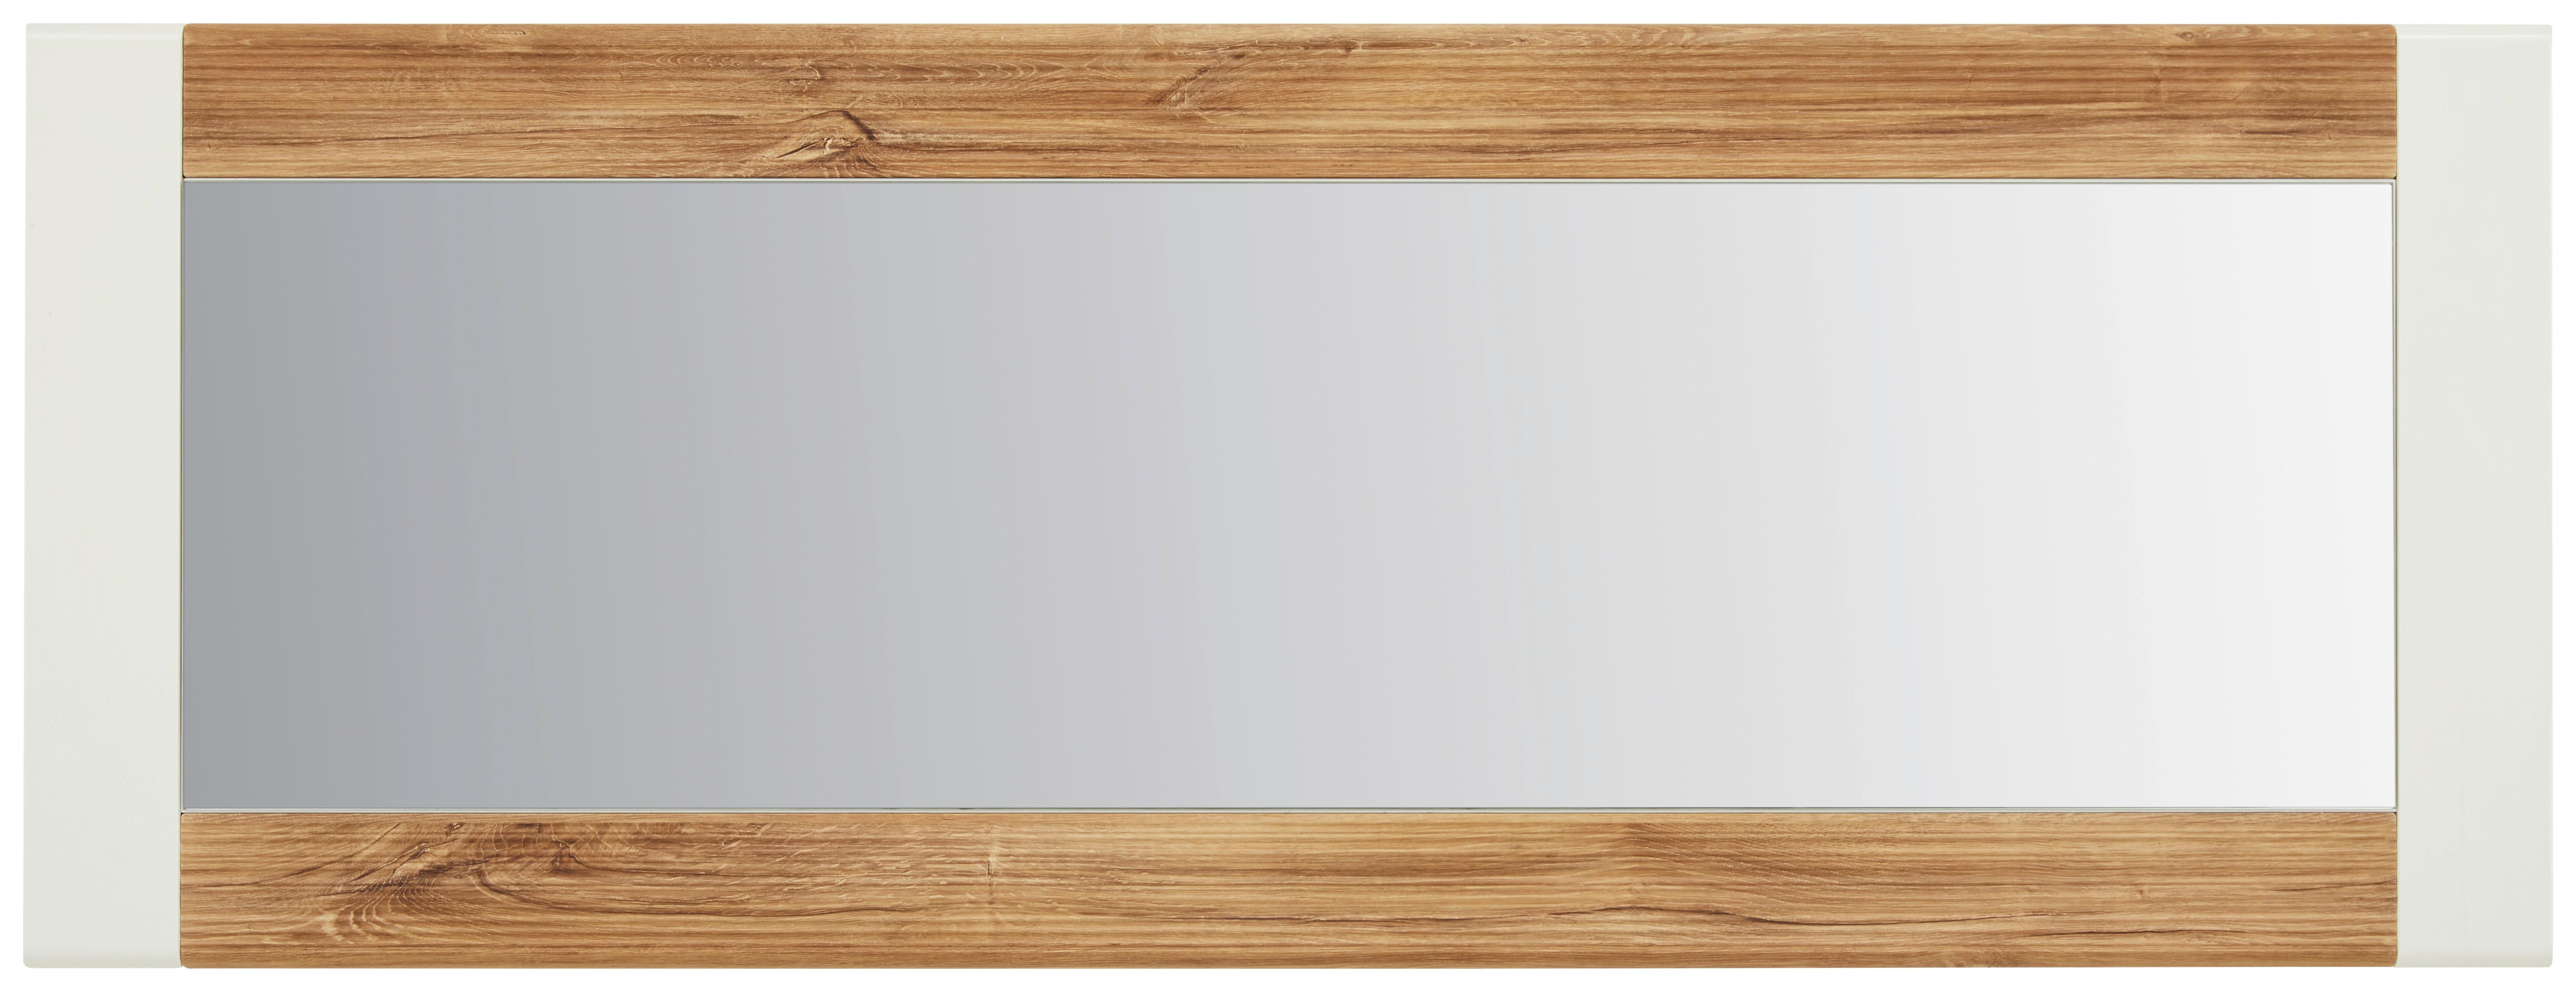 Ogledalo Zidno Leonardo - bijela/boje hrasta, Modern, staklo/drvni materijal (60/160/2cm) - Modern Living